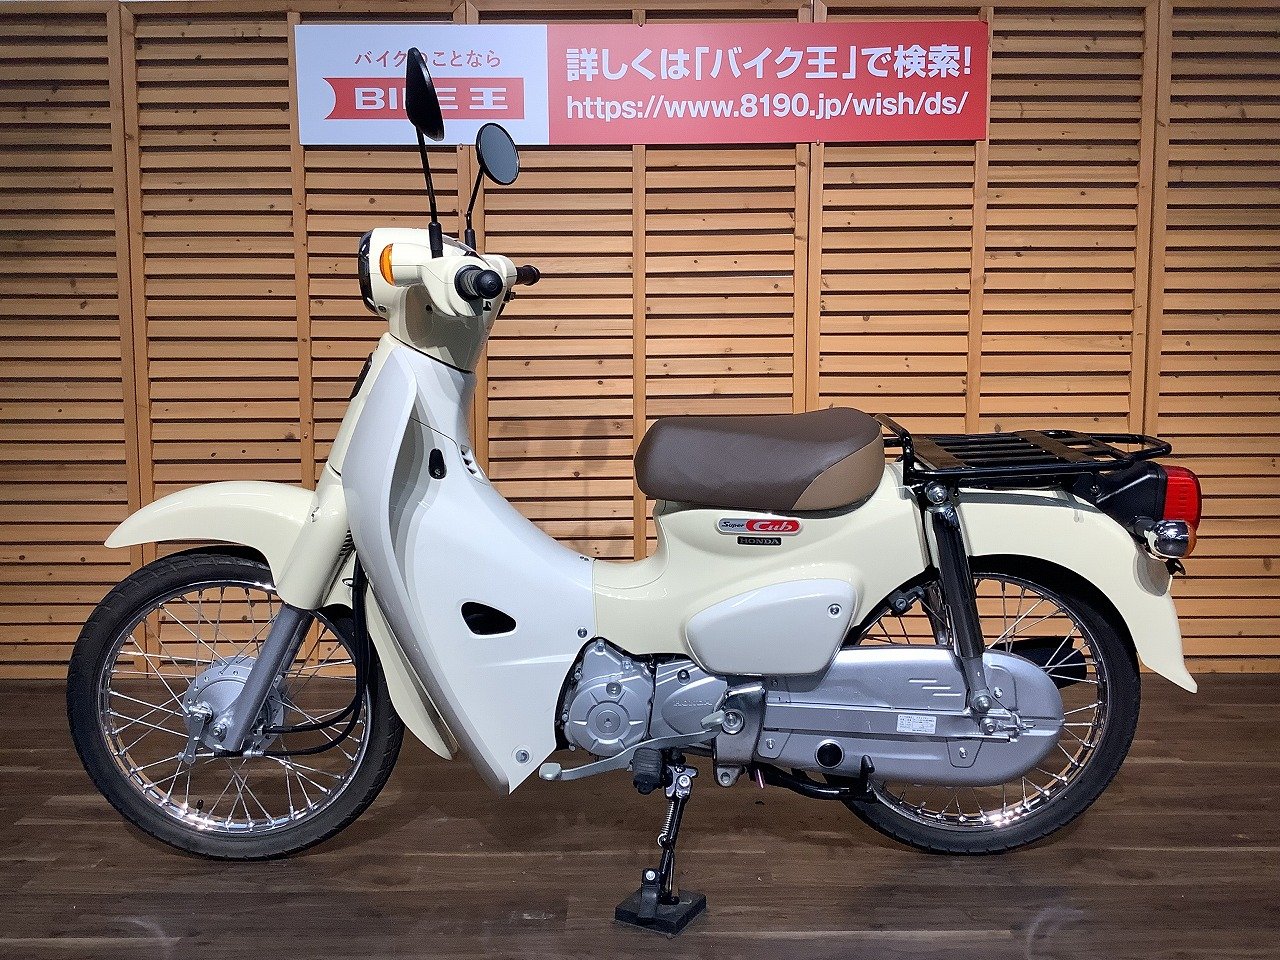 リトルカブ Little Cub 50cc原付 バイク 愛知県一宮市 - オートバイ車体